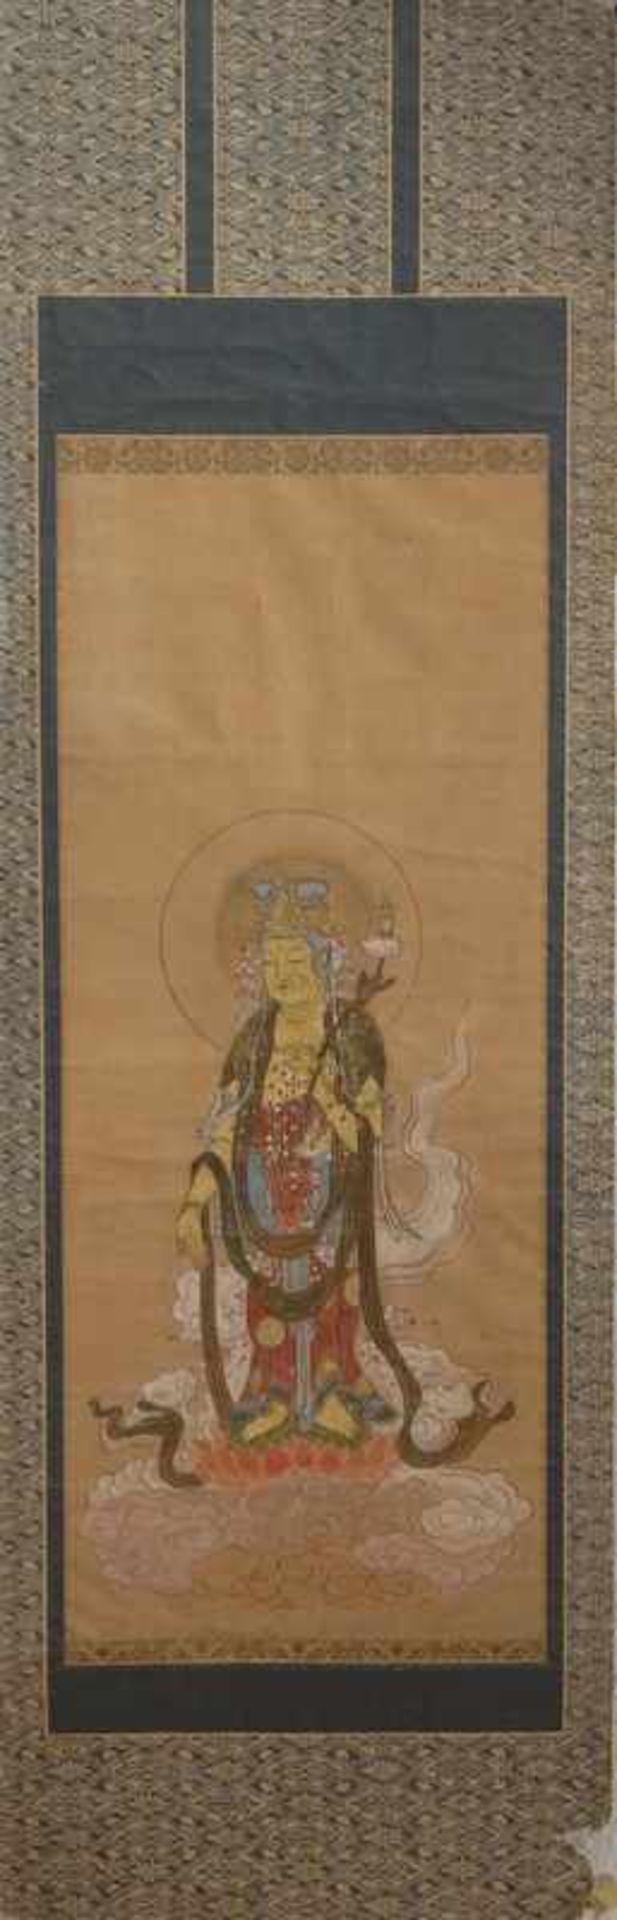 Rollbild mit Guanyin Darstellung Japan Mejii 19. Jh. Tusche und Goldhöhung Papier, 84x34cm, auf